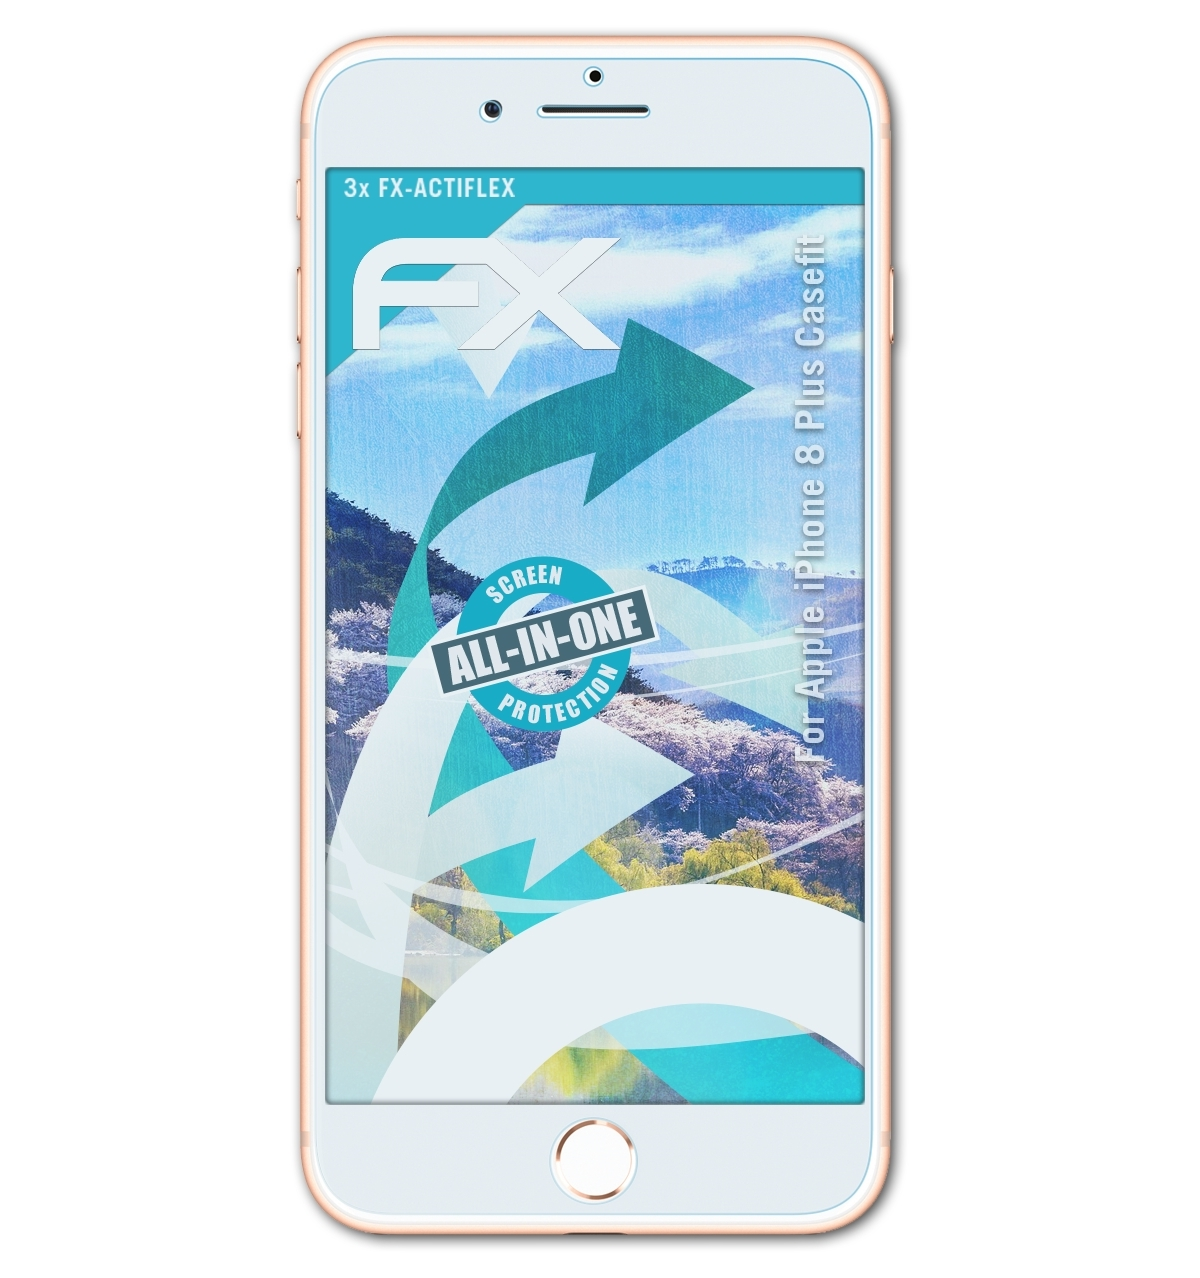 Plus Displayschutz(für 3x iPhone (Casefit)) 8 FX-ActiFleX Apple ATFOLIX